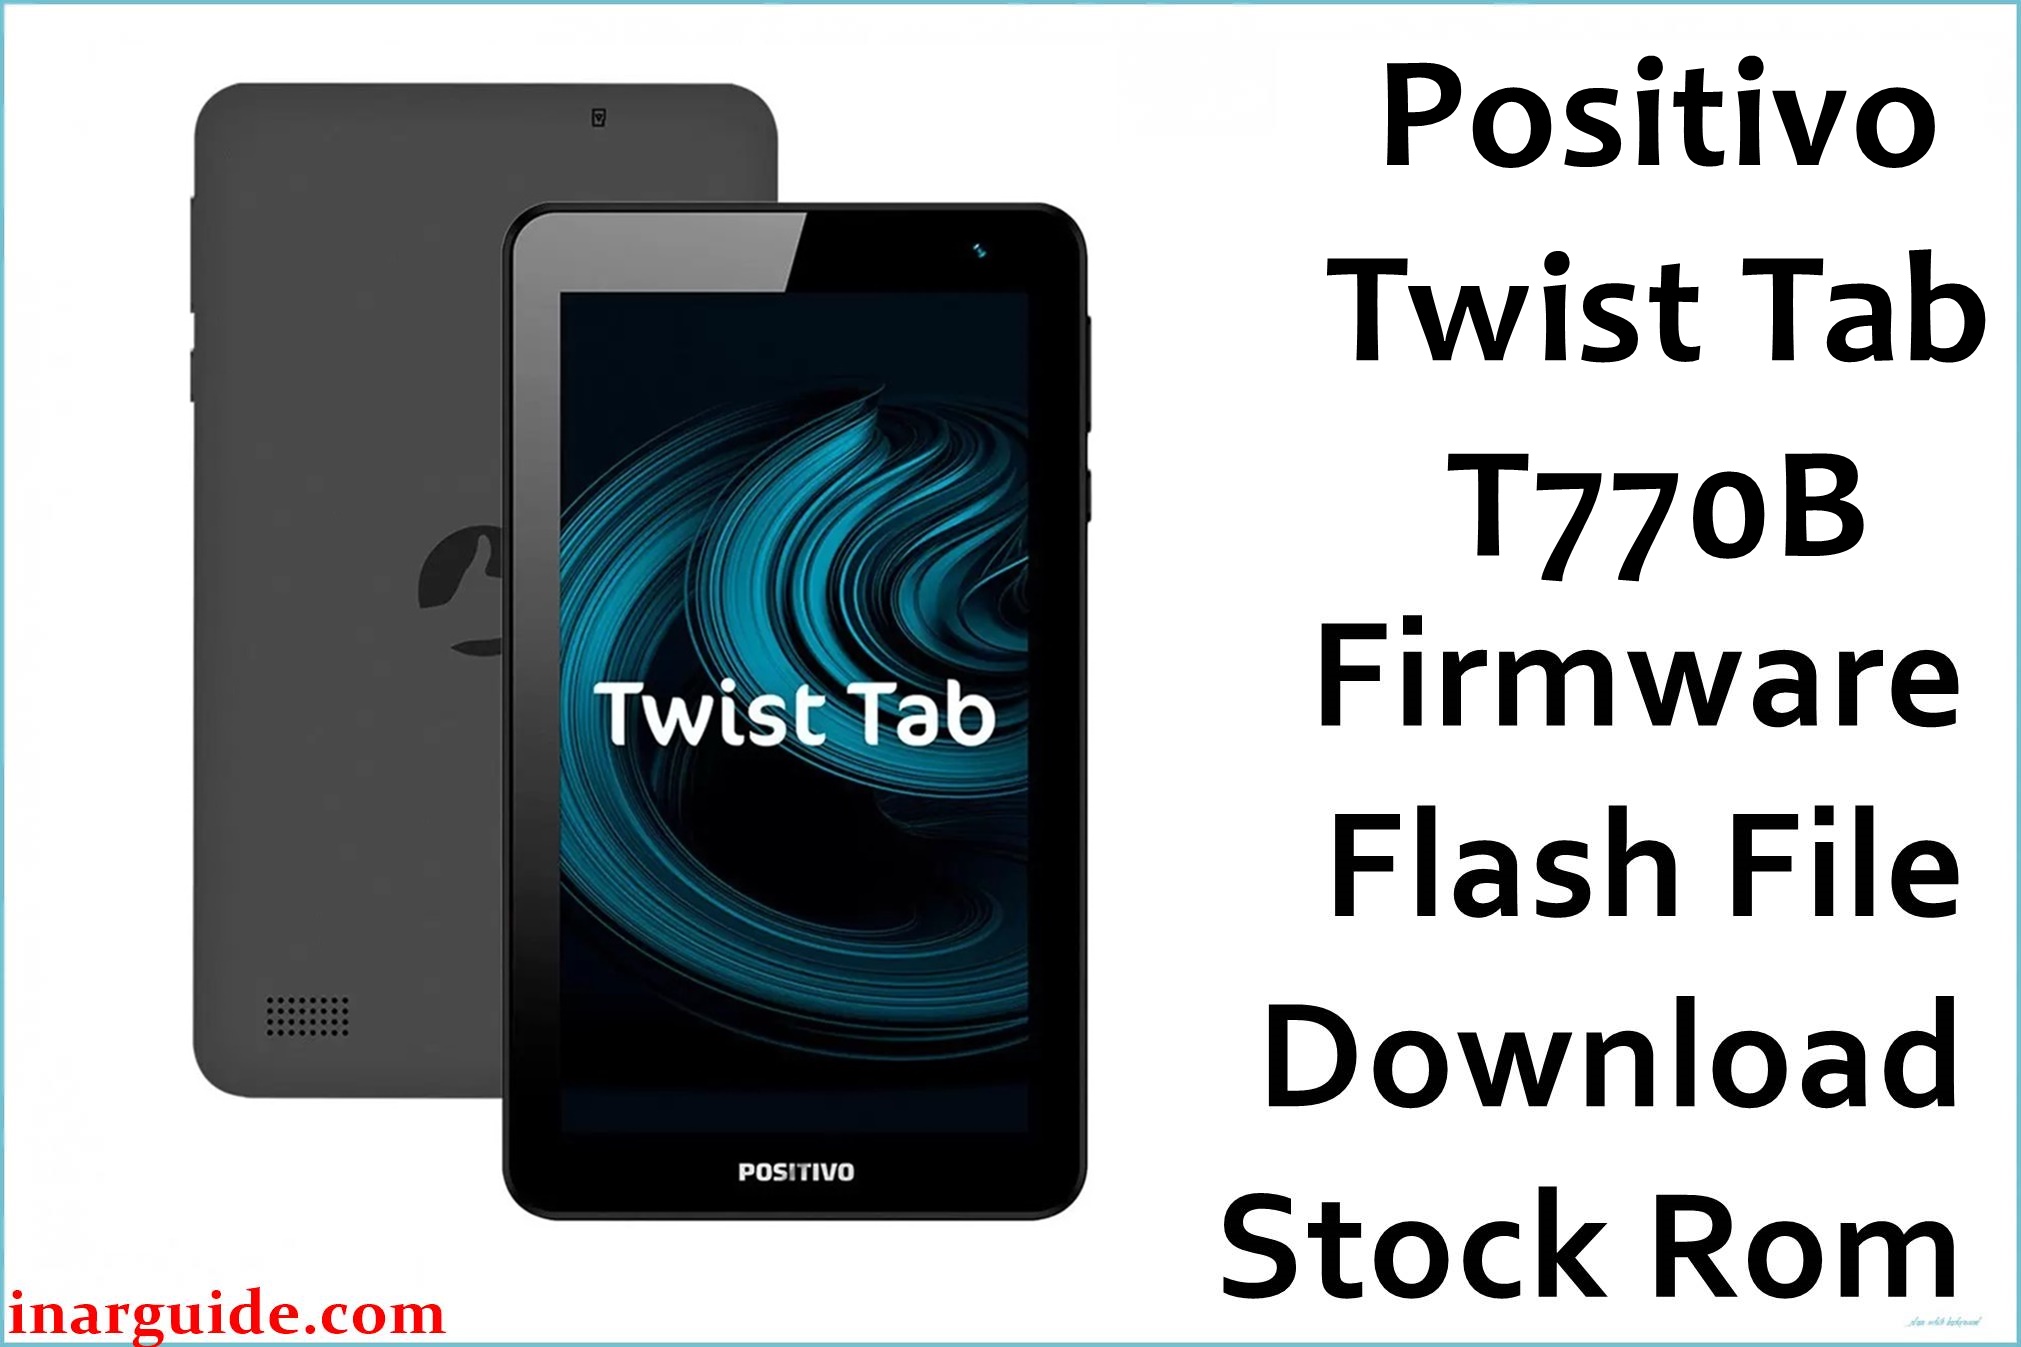 Positivo Twist Tab T770B 1